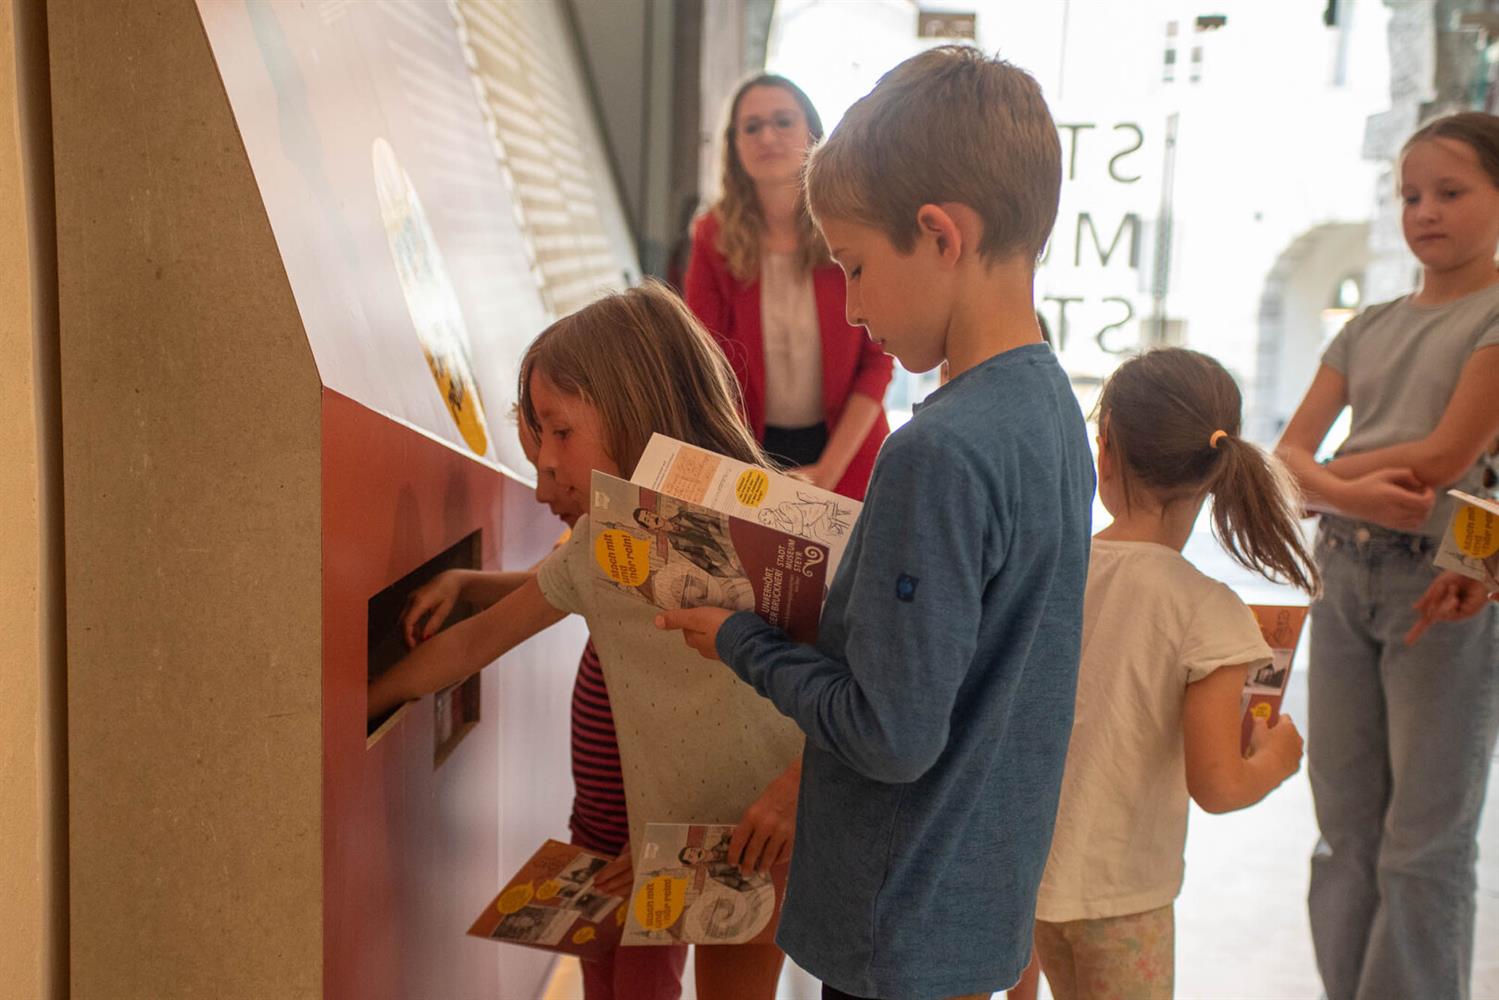 Kinder holen sich das Aktionsheft zur Ausstellung "UN#ERHÖRT, dieser Bruckner!" ab